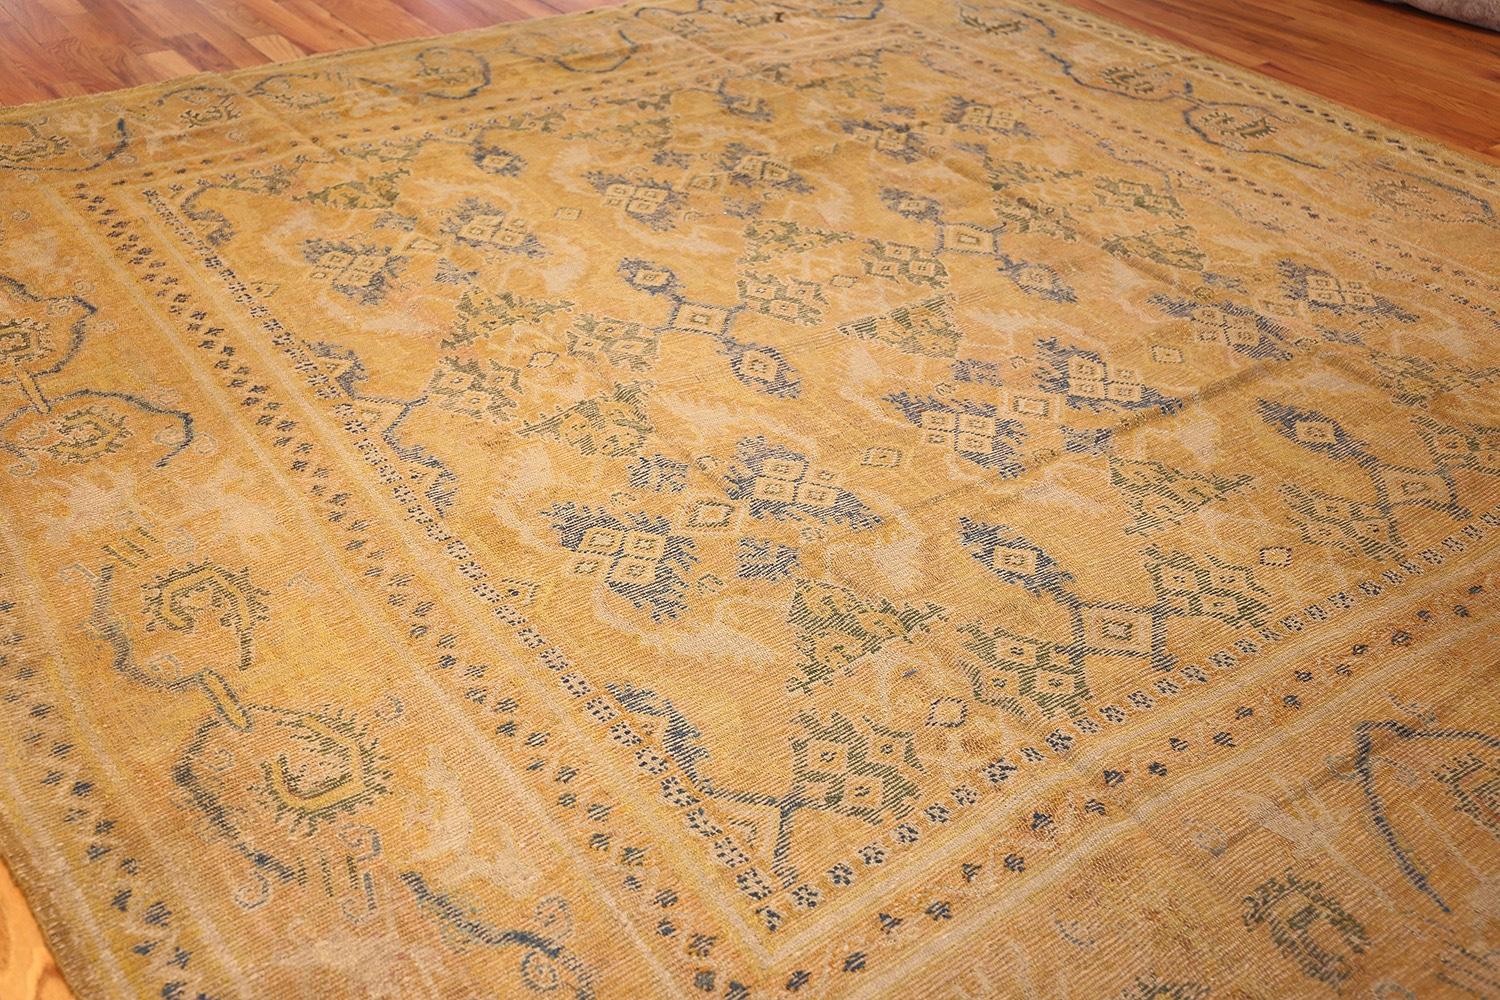 Antique 17th Century Spanish Cuenca Carpet. Size: 10' x 11' (3.05 m x 3.35 m) 1